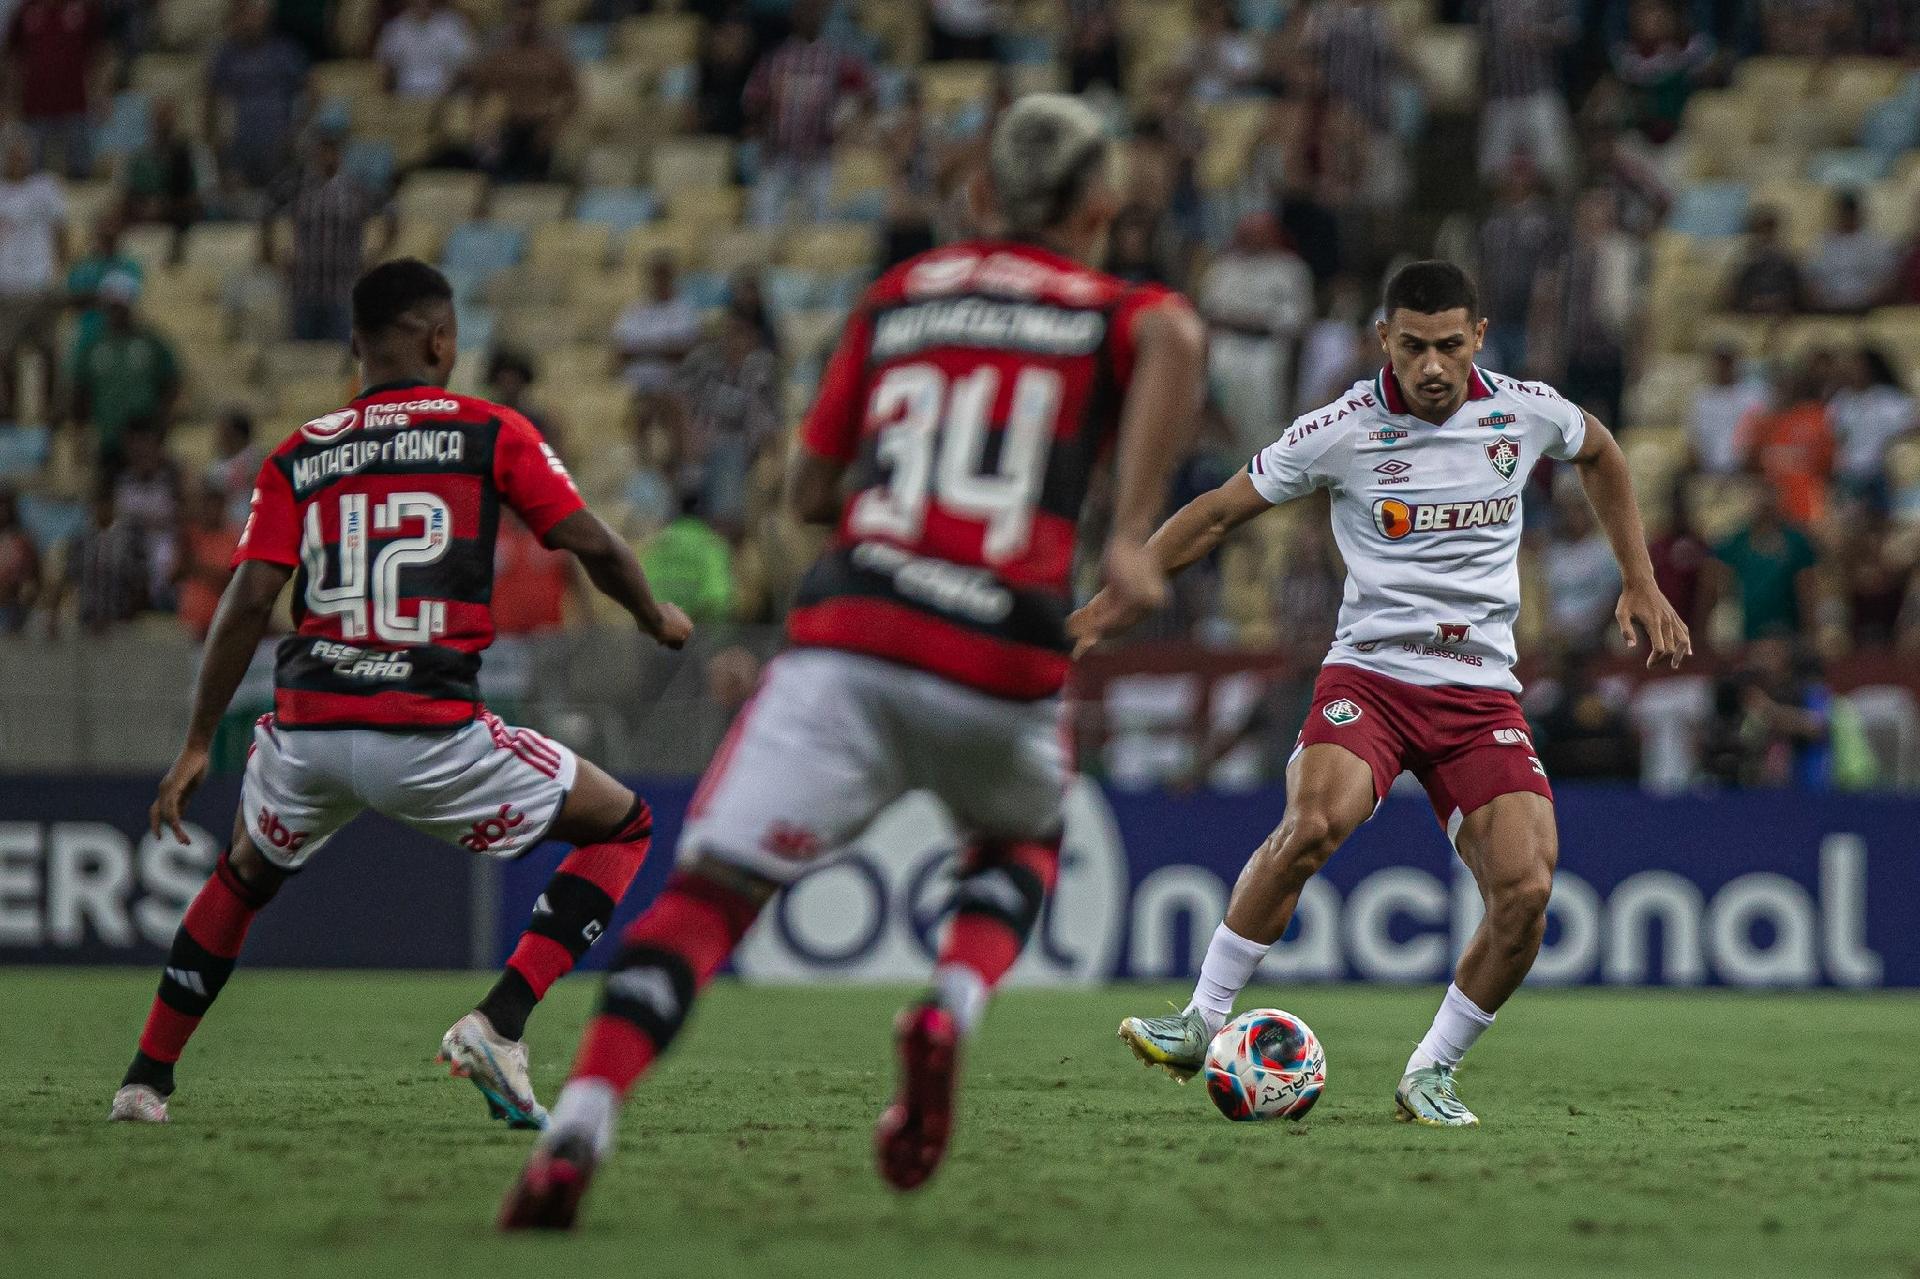 André diz que Fluminense é favorito contra o Flamengo: 'Estamos jogando  mais